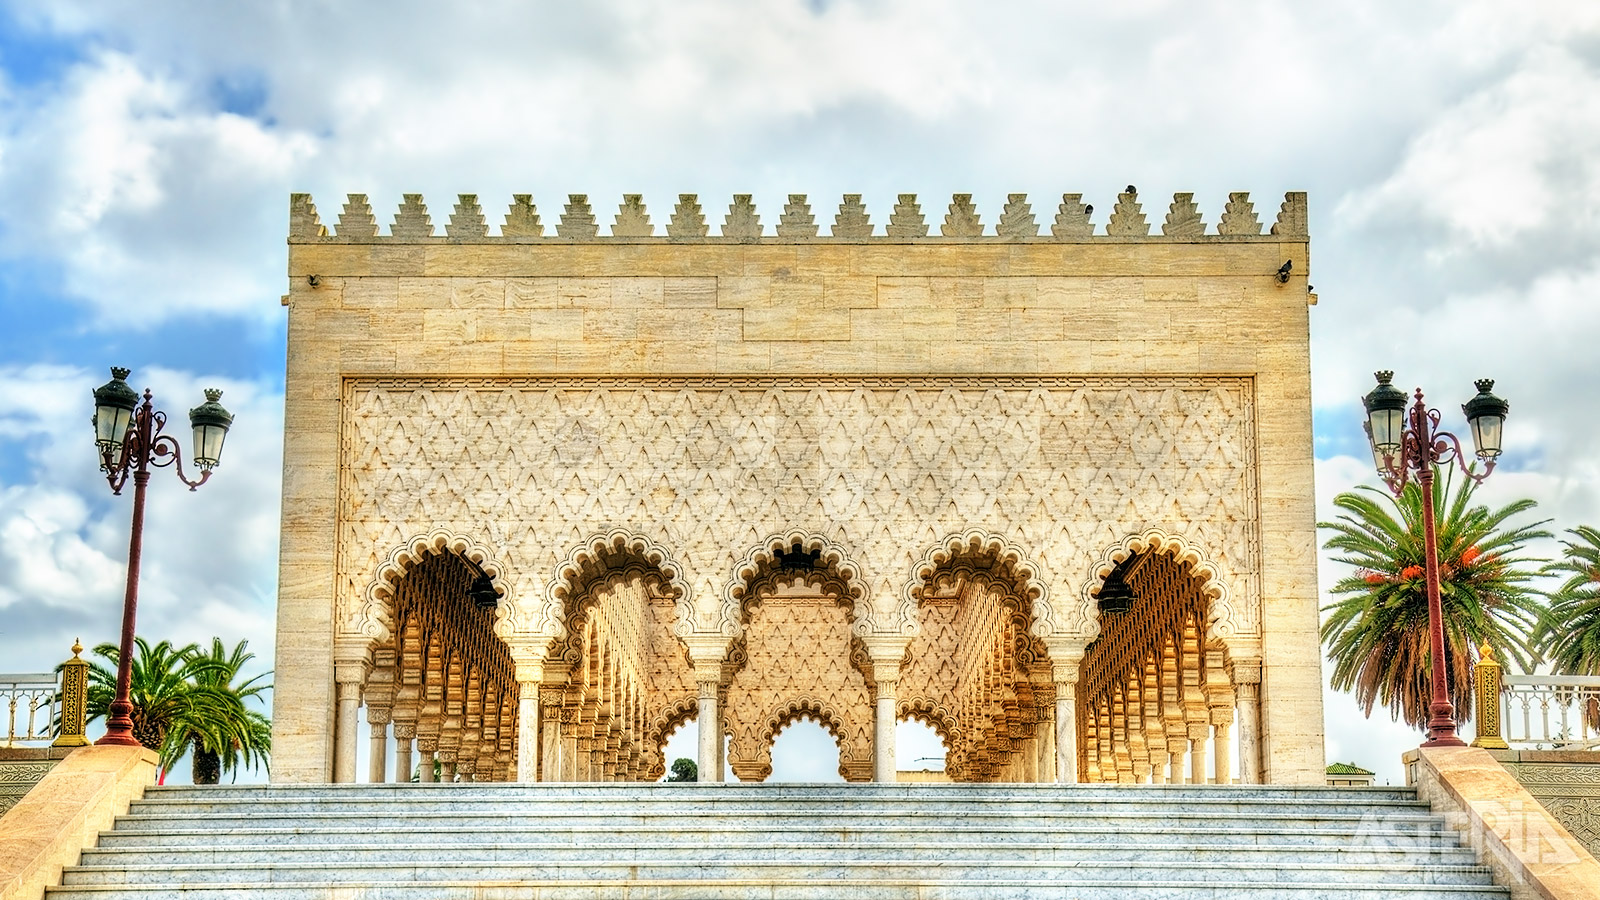 Het Mohamed V Mausoleum bevat de graven van de Marokkaanse koning en zijn twee zonen, wijlen koning Hassan II en prins Abdallah